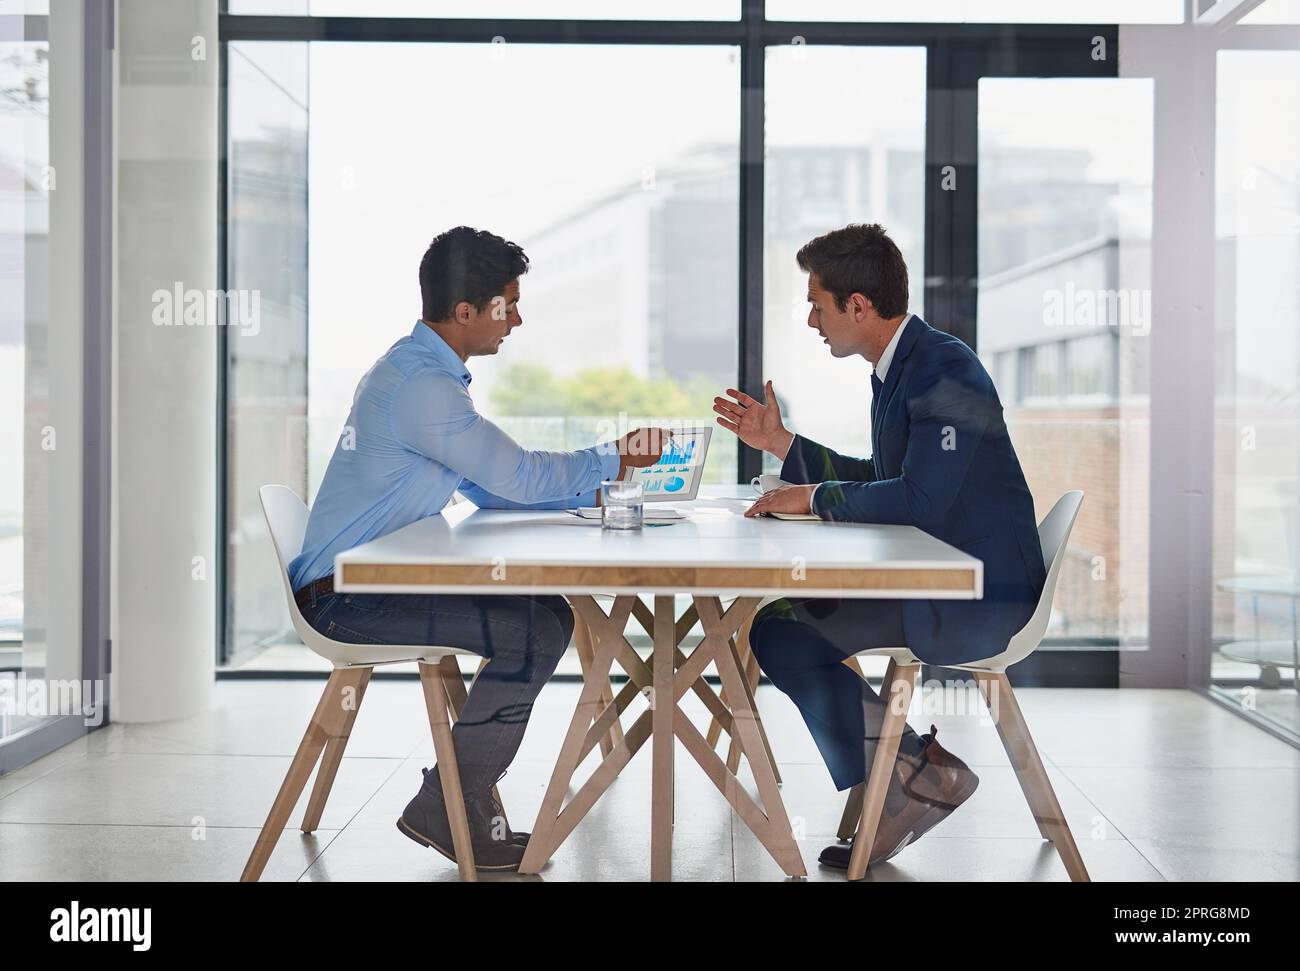 Kollaborative Fähigkeiten sind für den Erfolg unerlässlich. Zwei Geschäftsleute, die während einer Besprechung im Büro ein digitales Tablet verwenden. Stockfoto